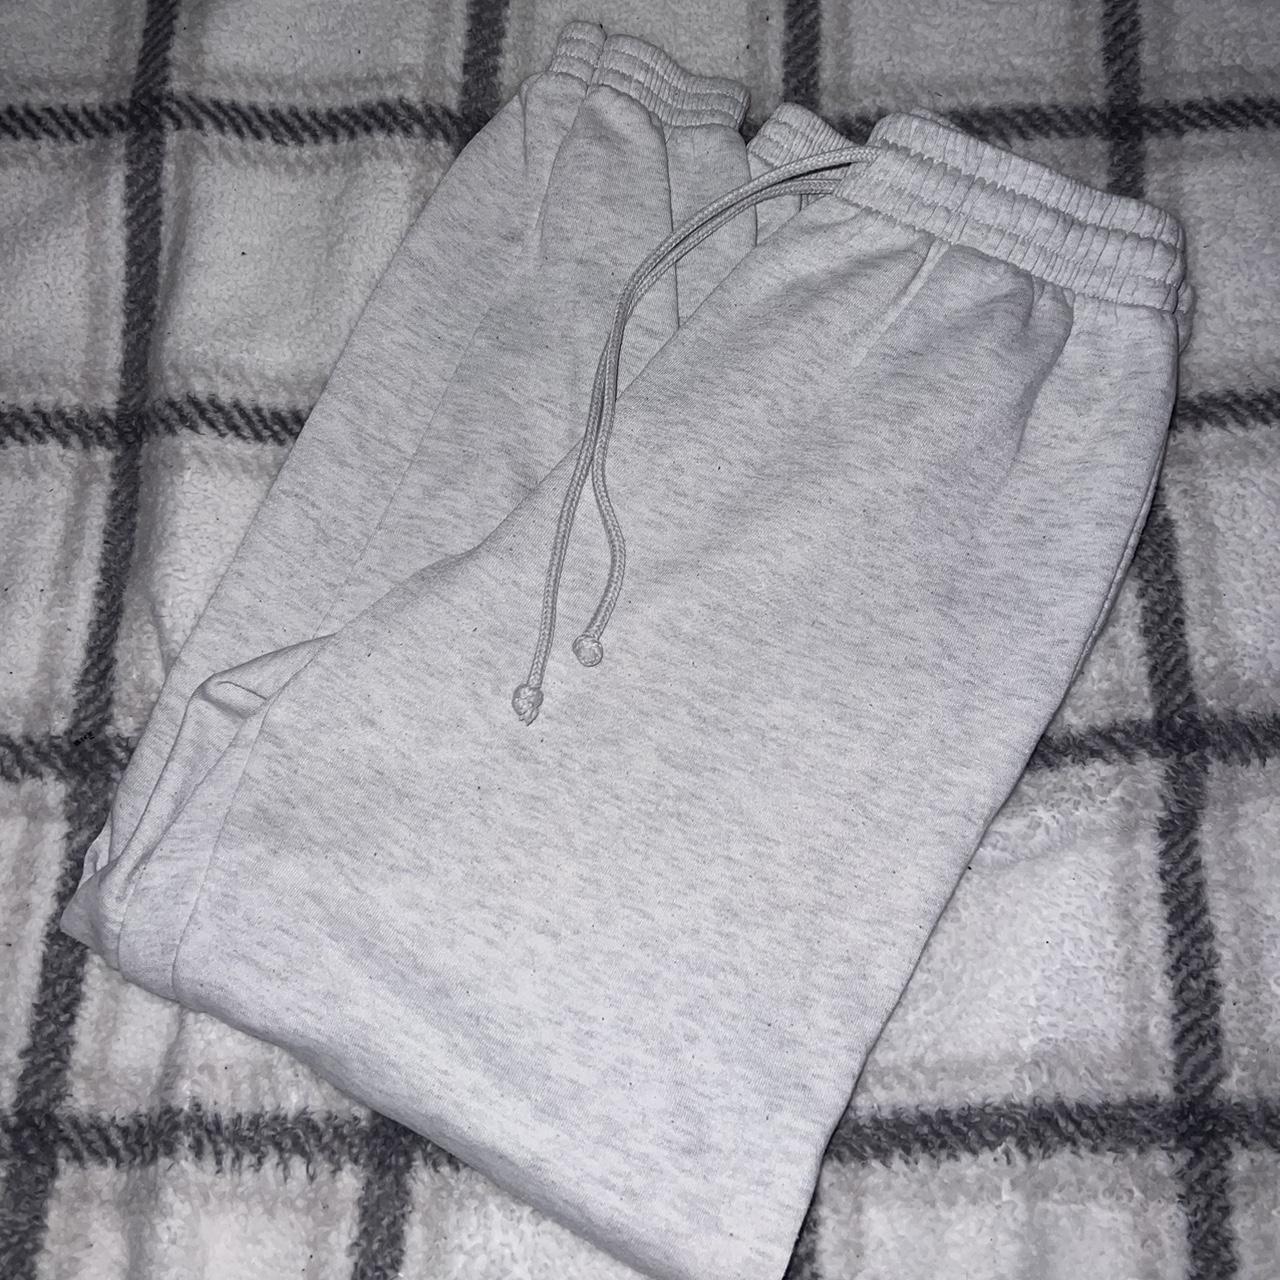 Topshop Petite plain smart sweatpants in gray